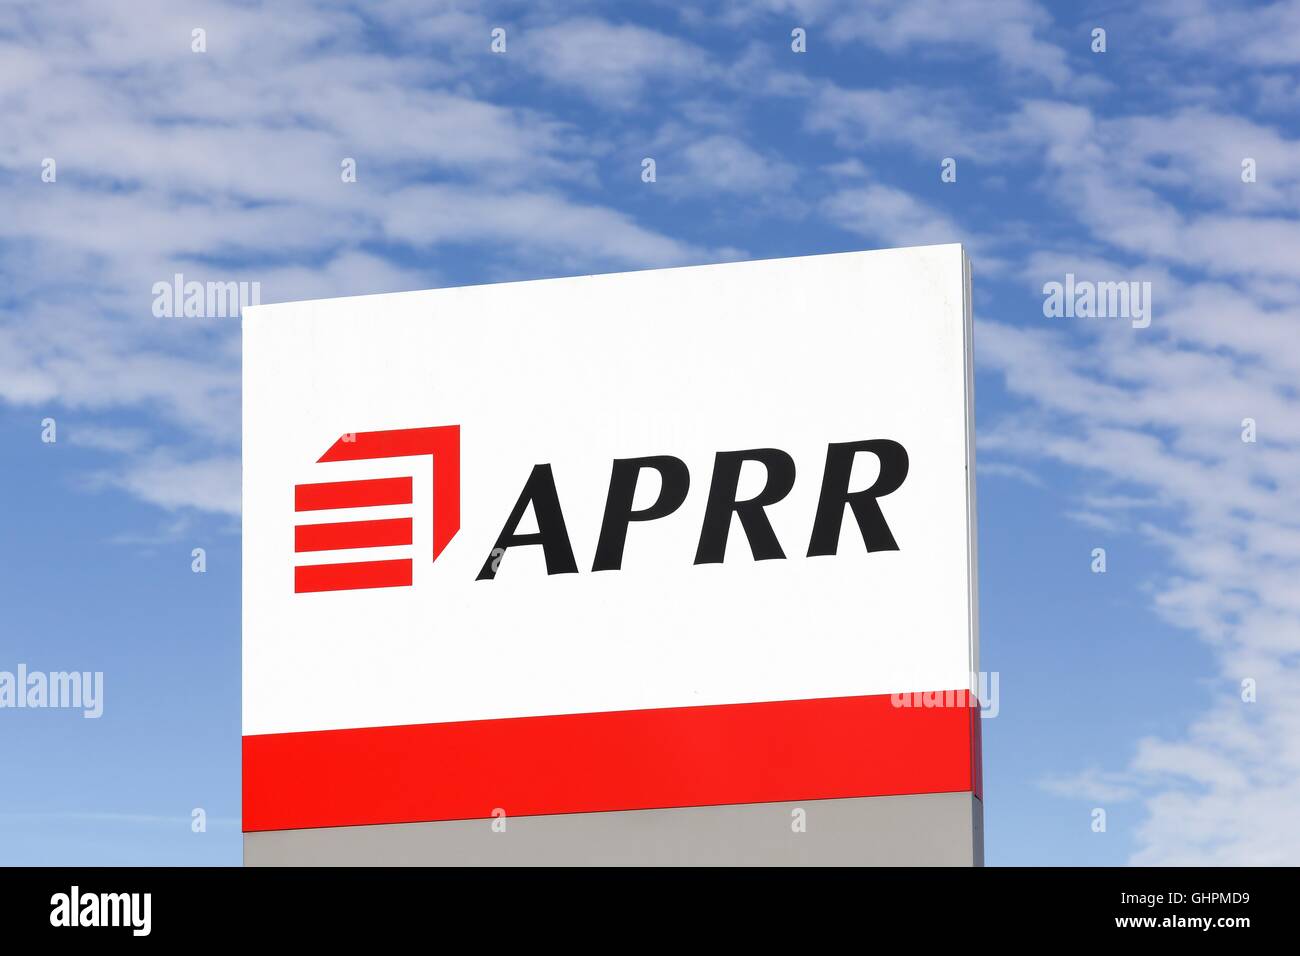 APRR signe sur un panneau Banque D'Images